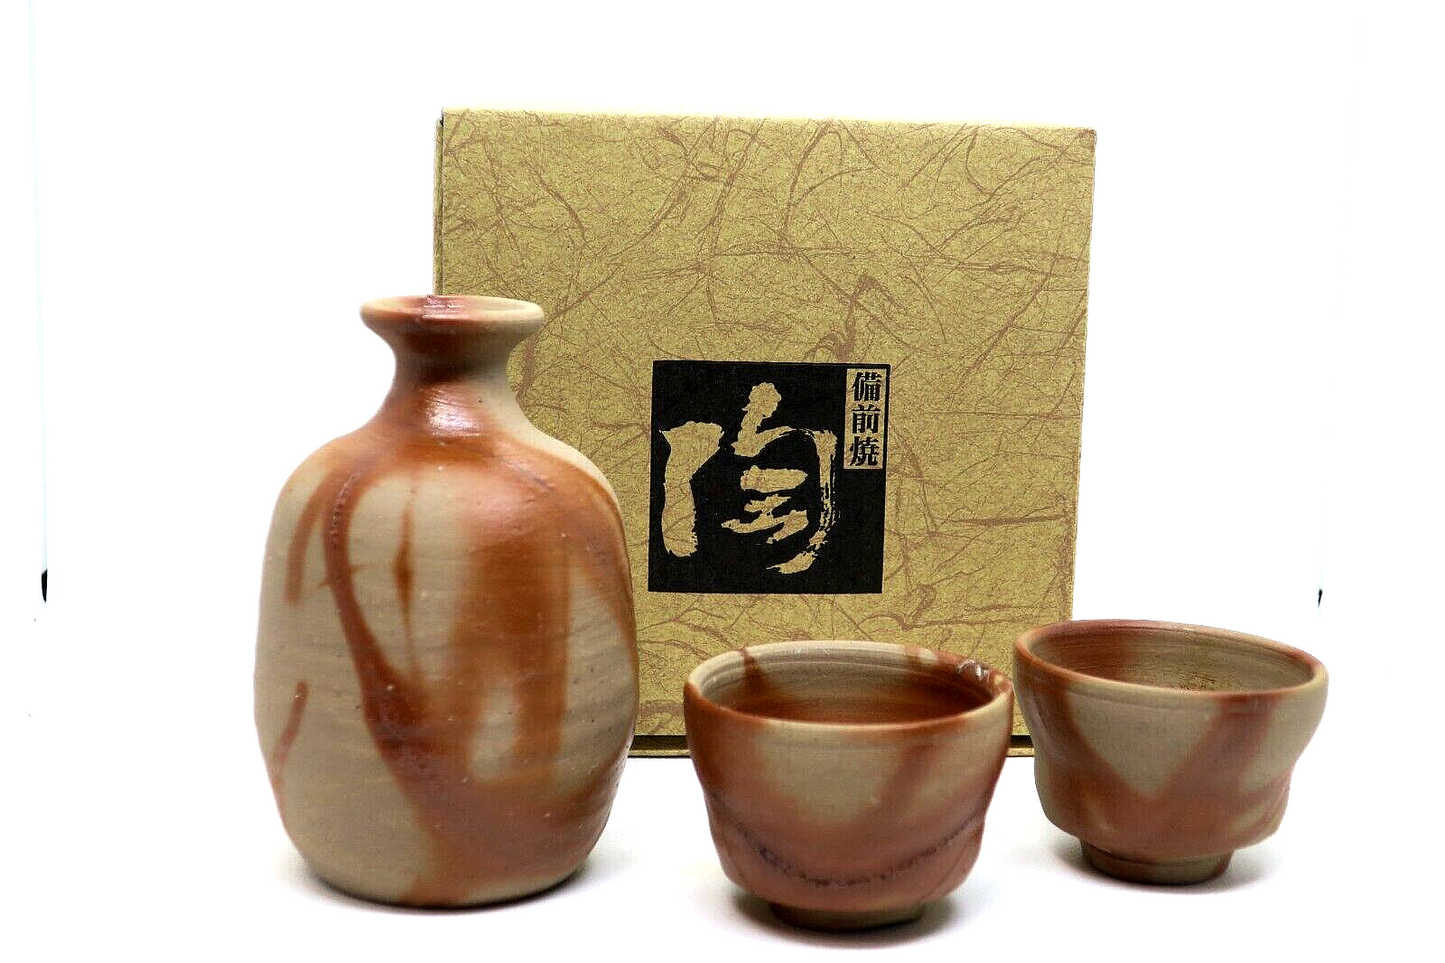 Japanese tokkuri sake bottle and sake cups set Bizen ware From Japan